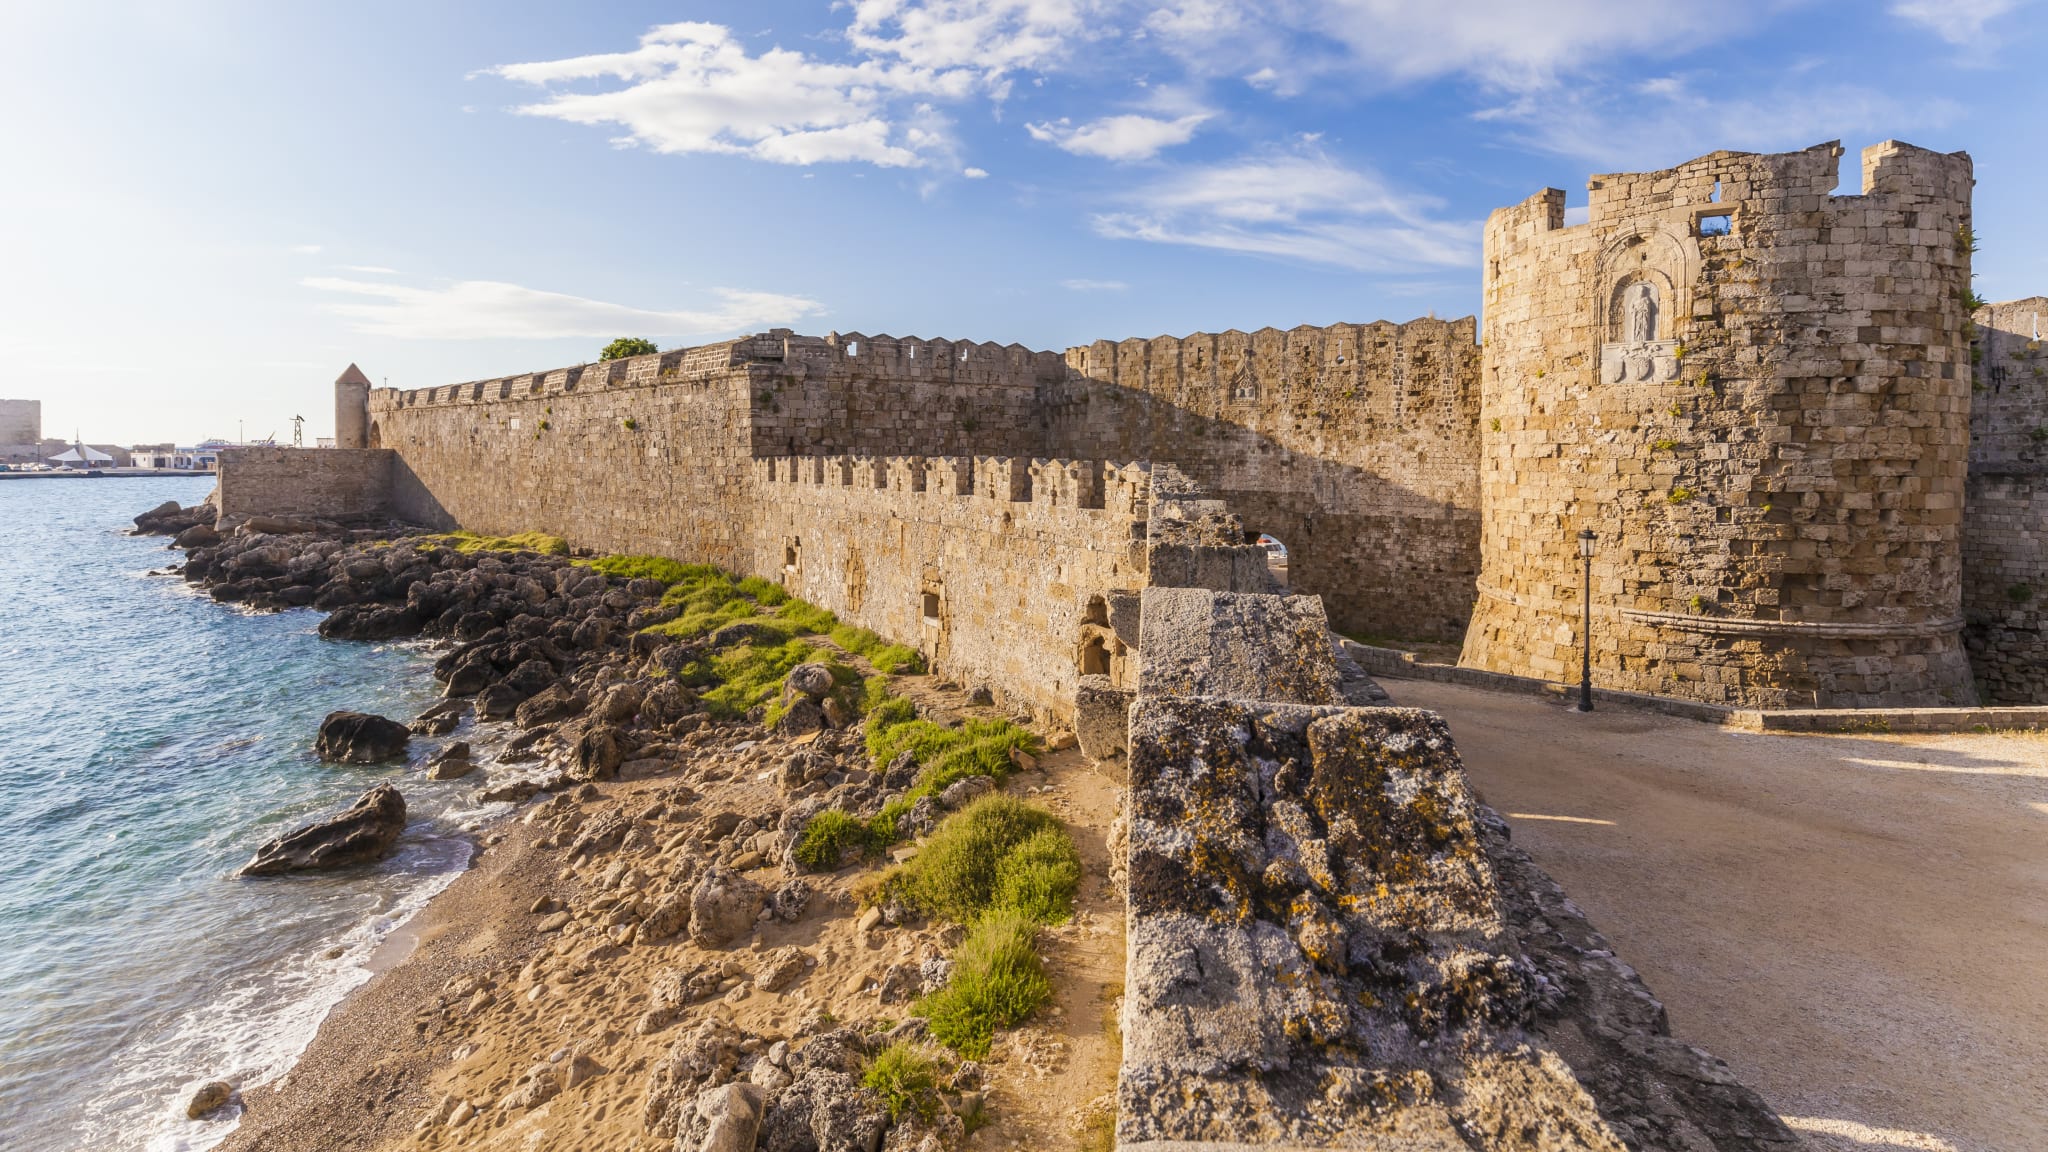 Stadtmauer von Rhodos, Insel Rhodos